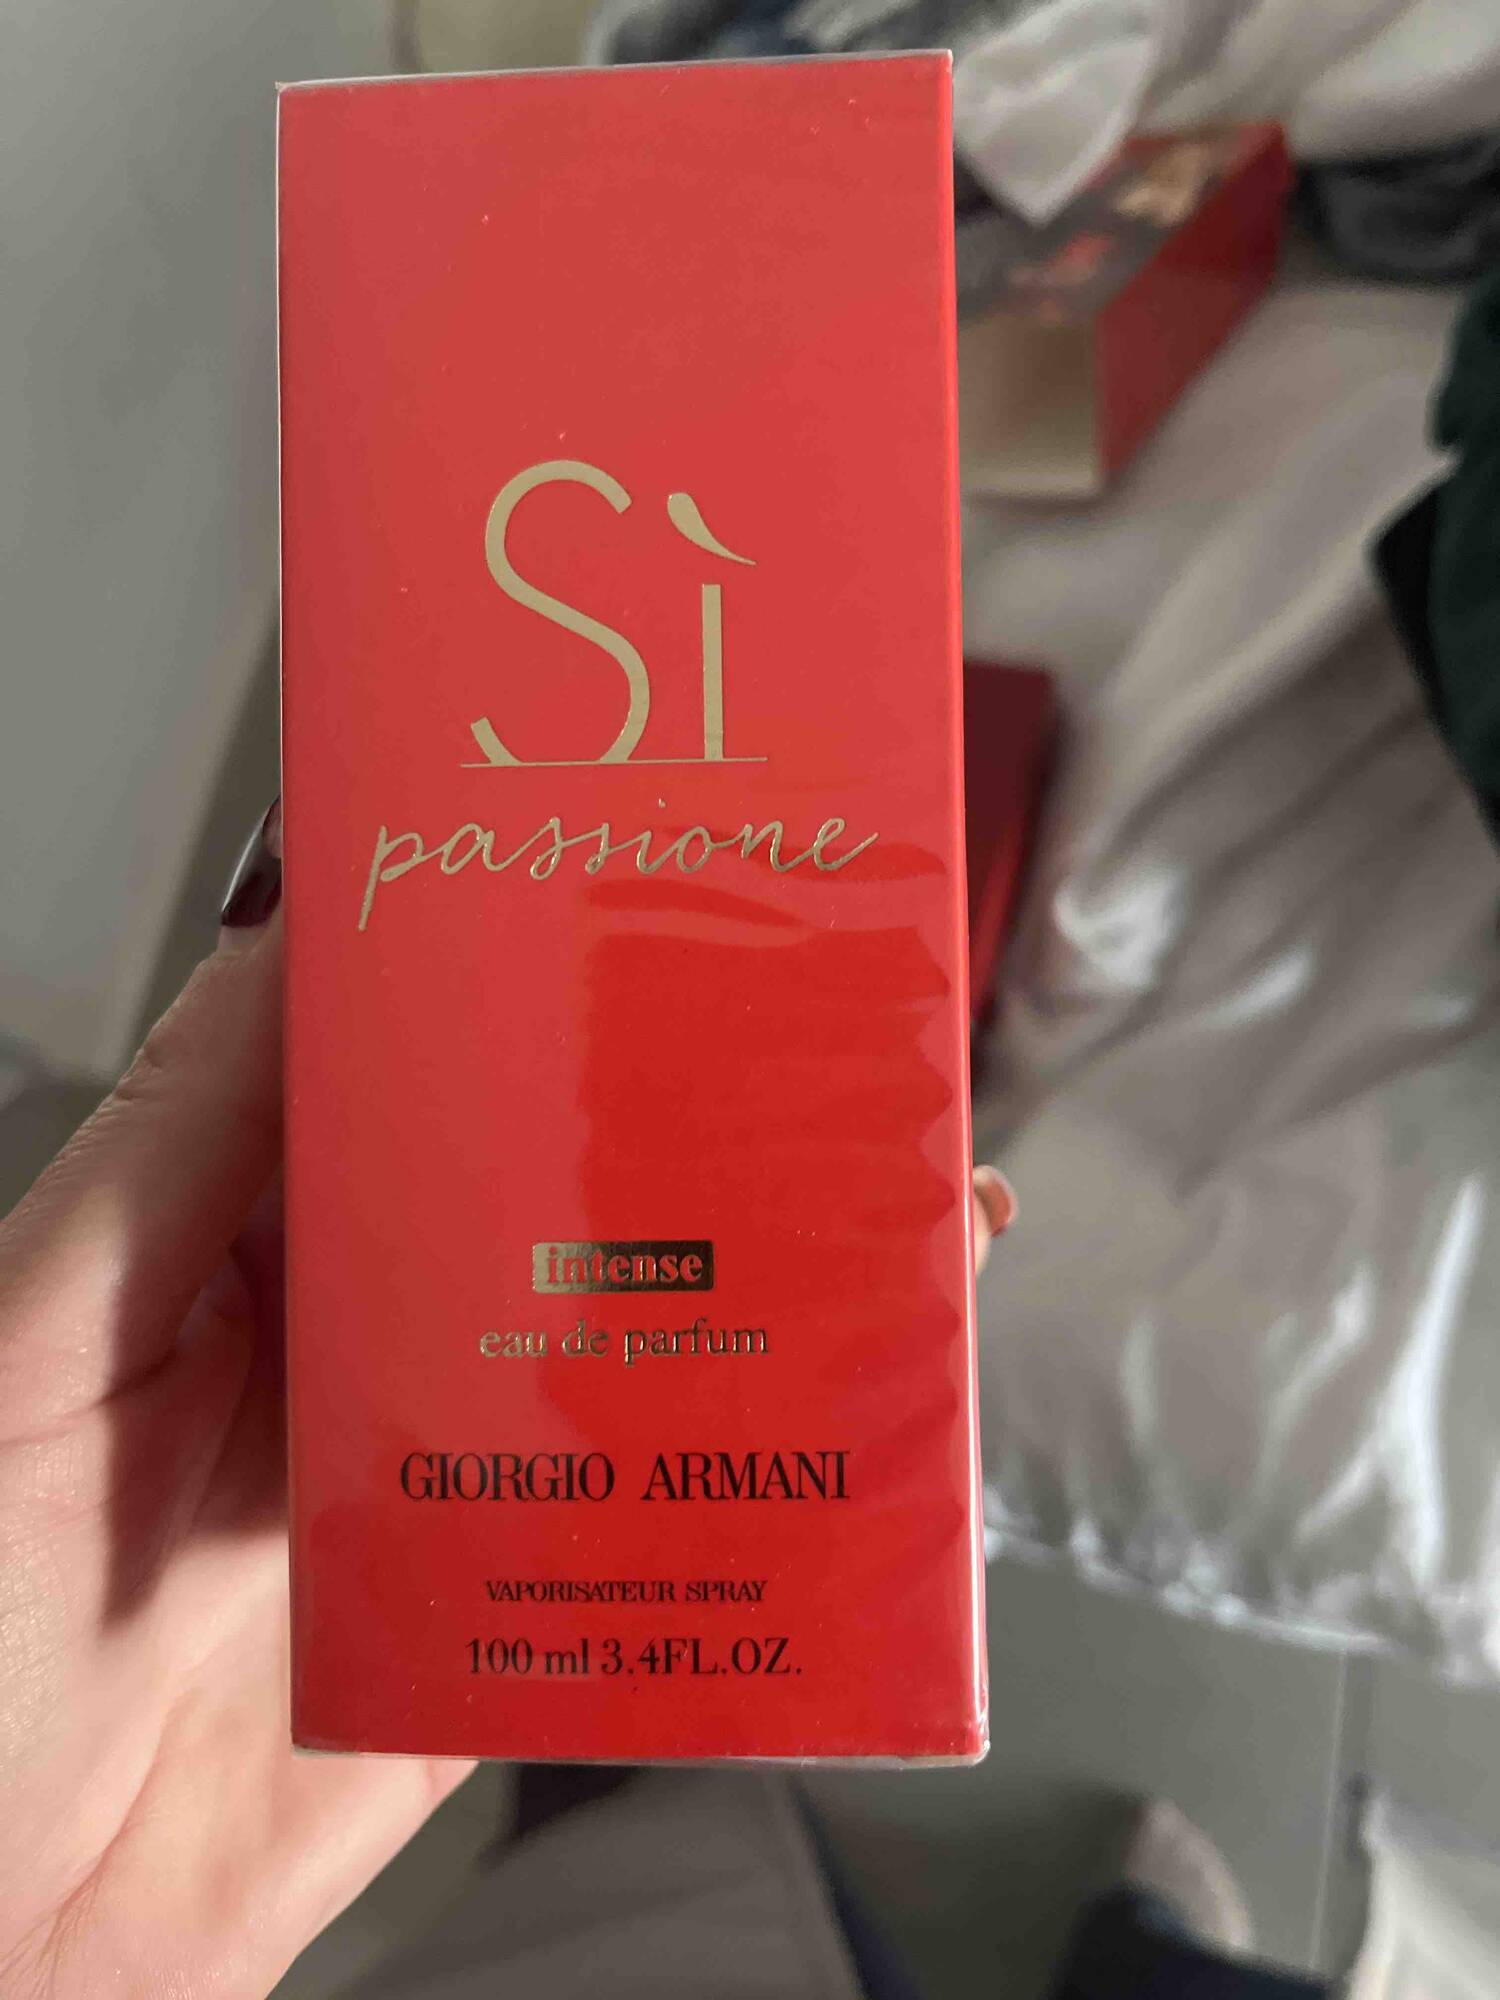 GIORGIO ARMANI - Si passione intense - Eau de parfum